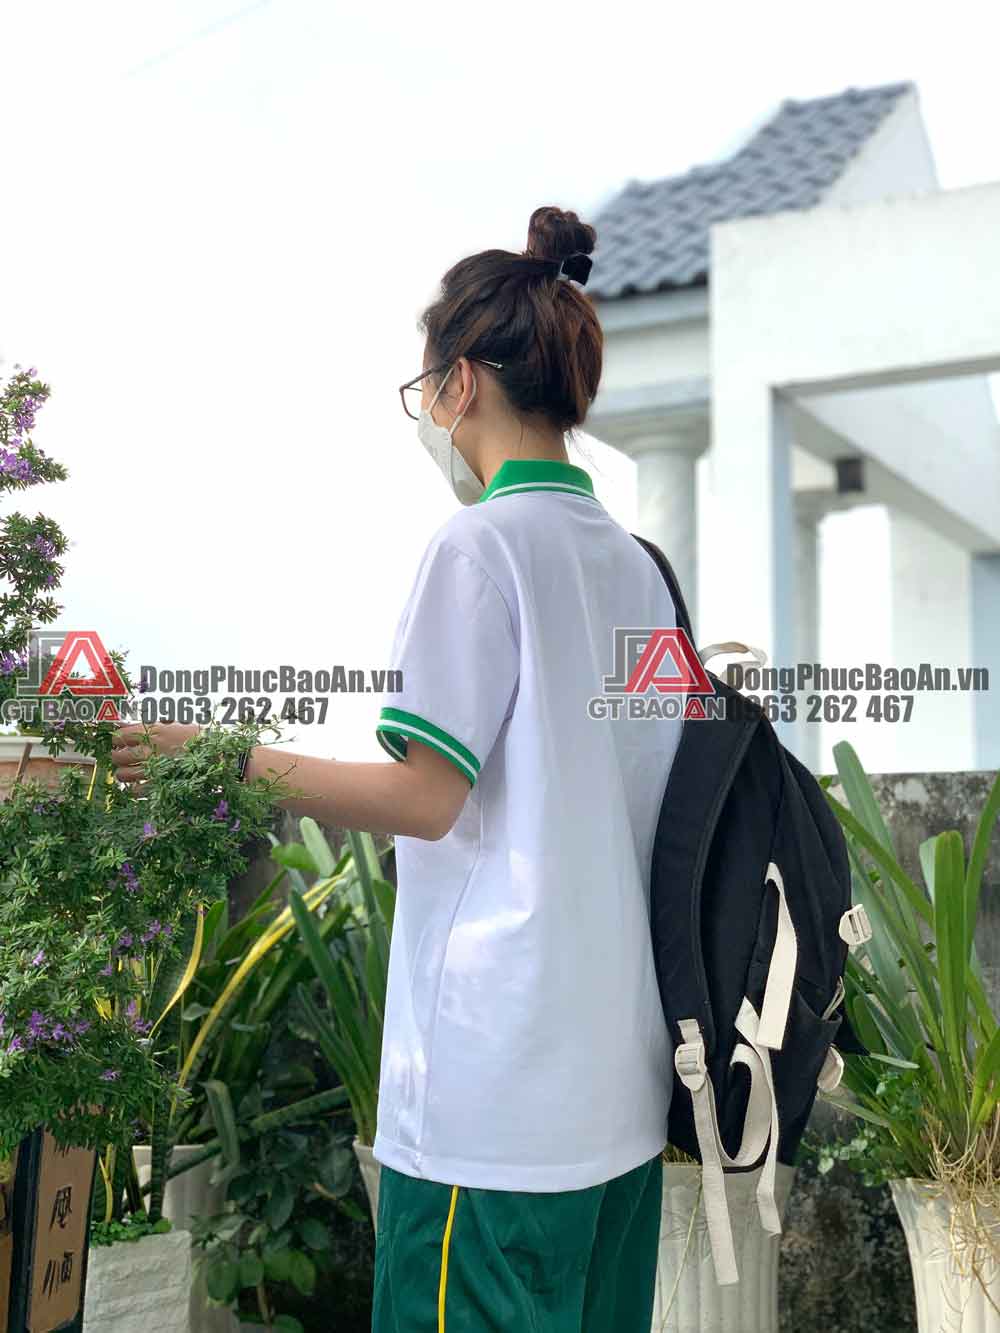 May đồng phục thể dục sinh viên đại học có logo giá rẻ TPHCM - Trường Đại học Y Khoa Phạm Ngọc Thạch